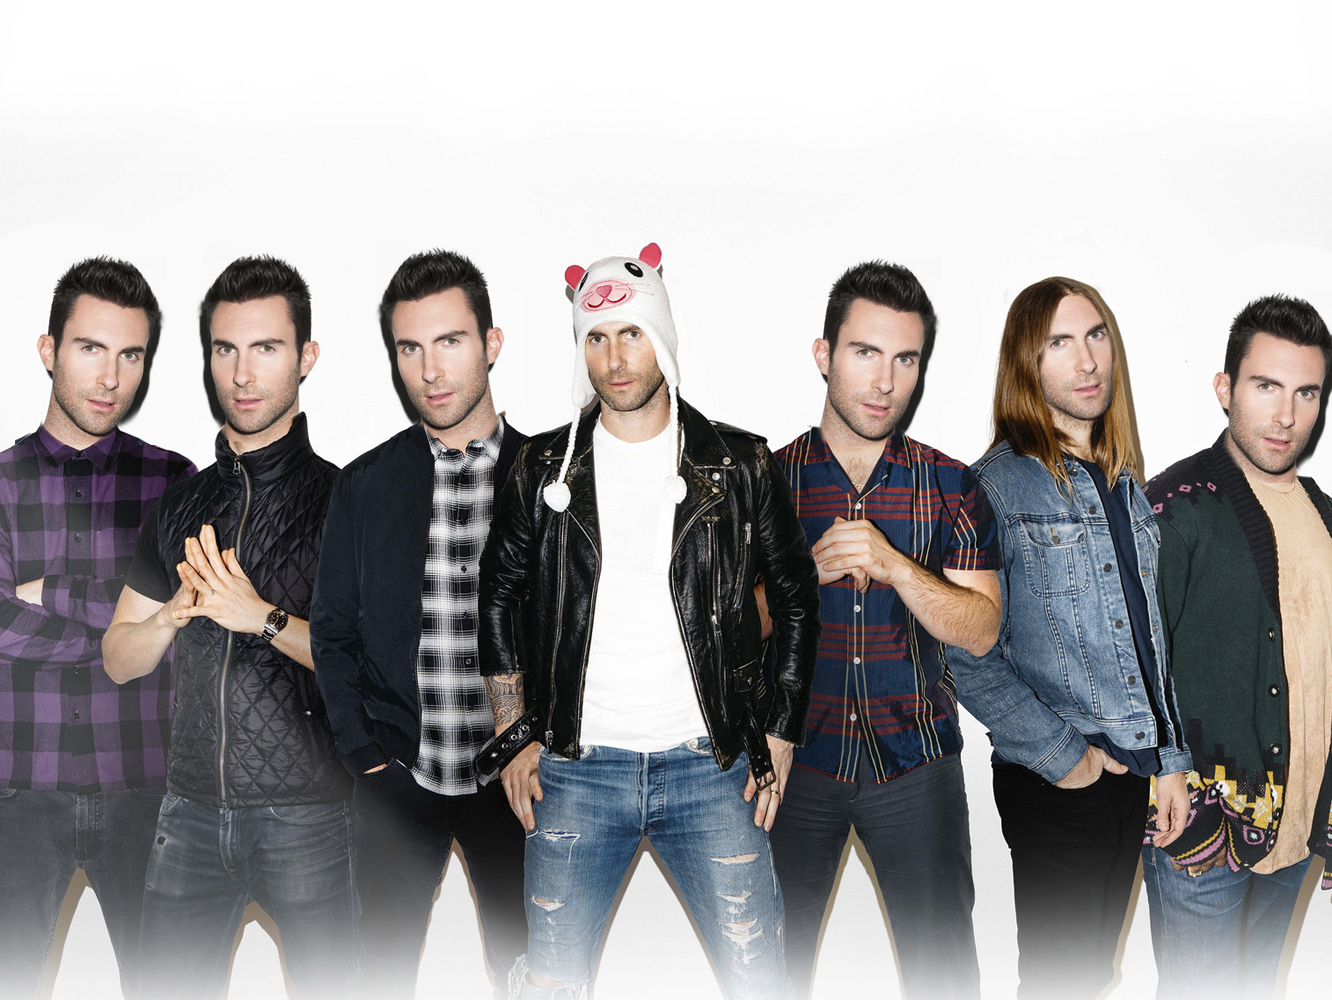  Variety da por hecho que Maroon 5 se encargará de la Super Bowl